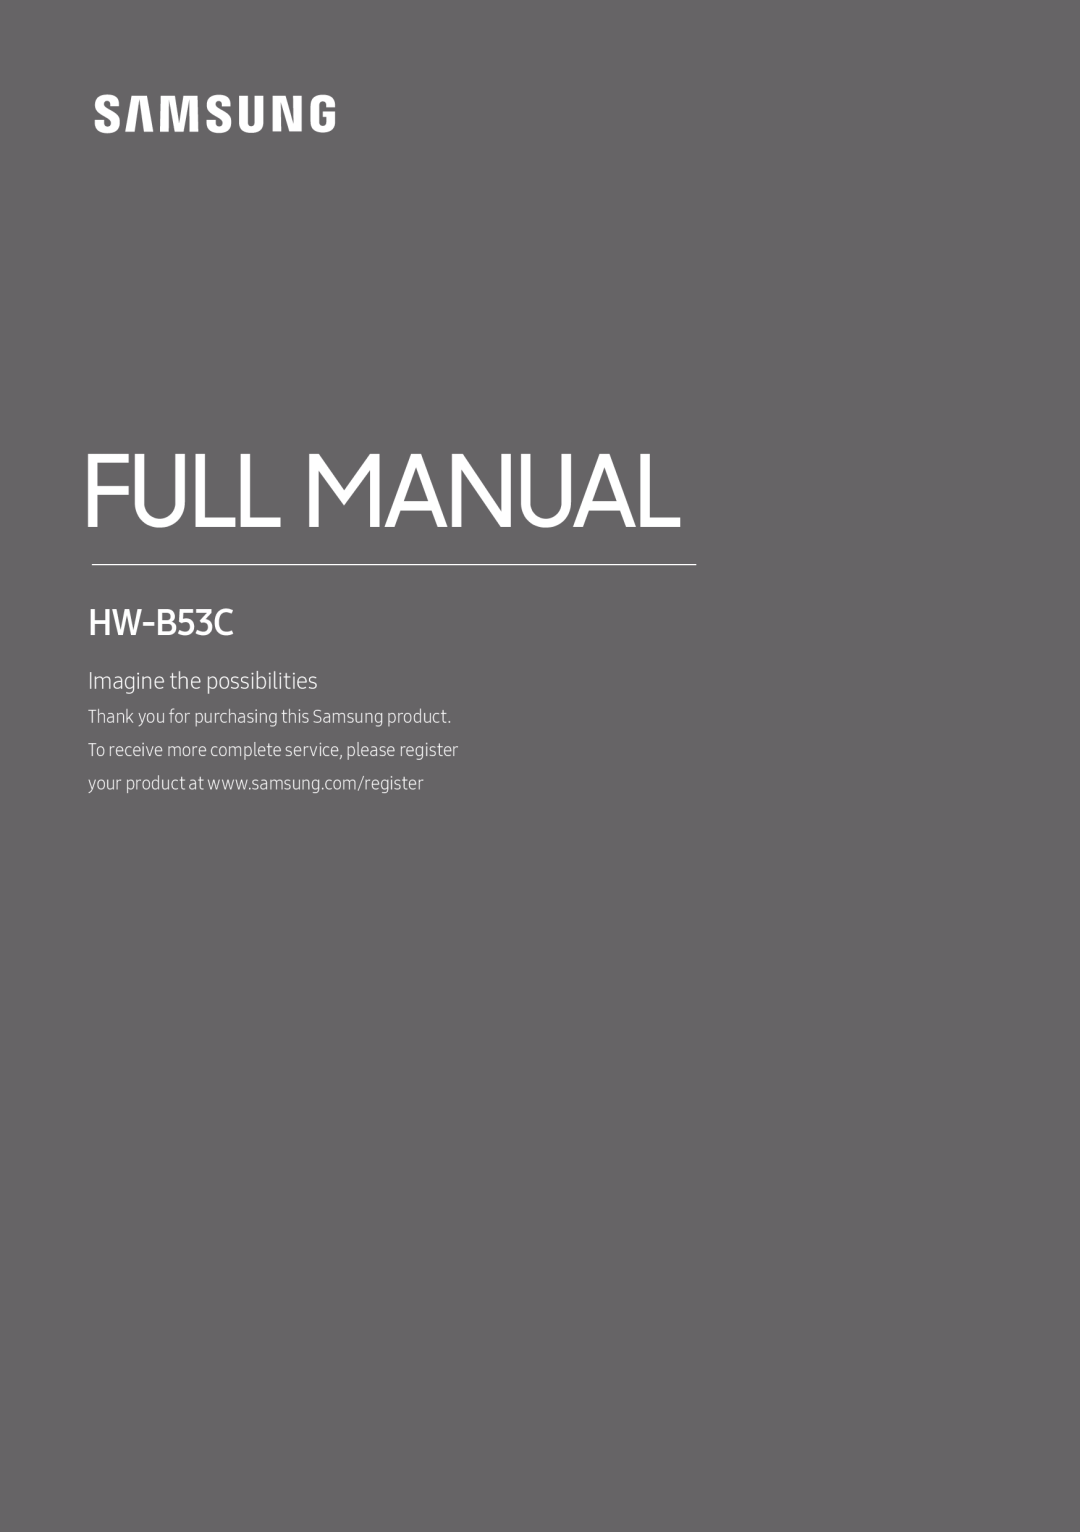 Standard HW-B53C HW-B53C/ZA